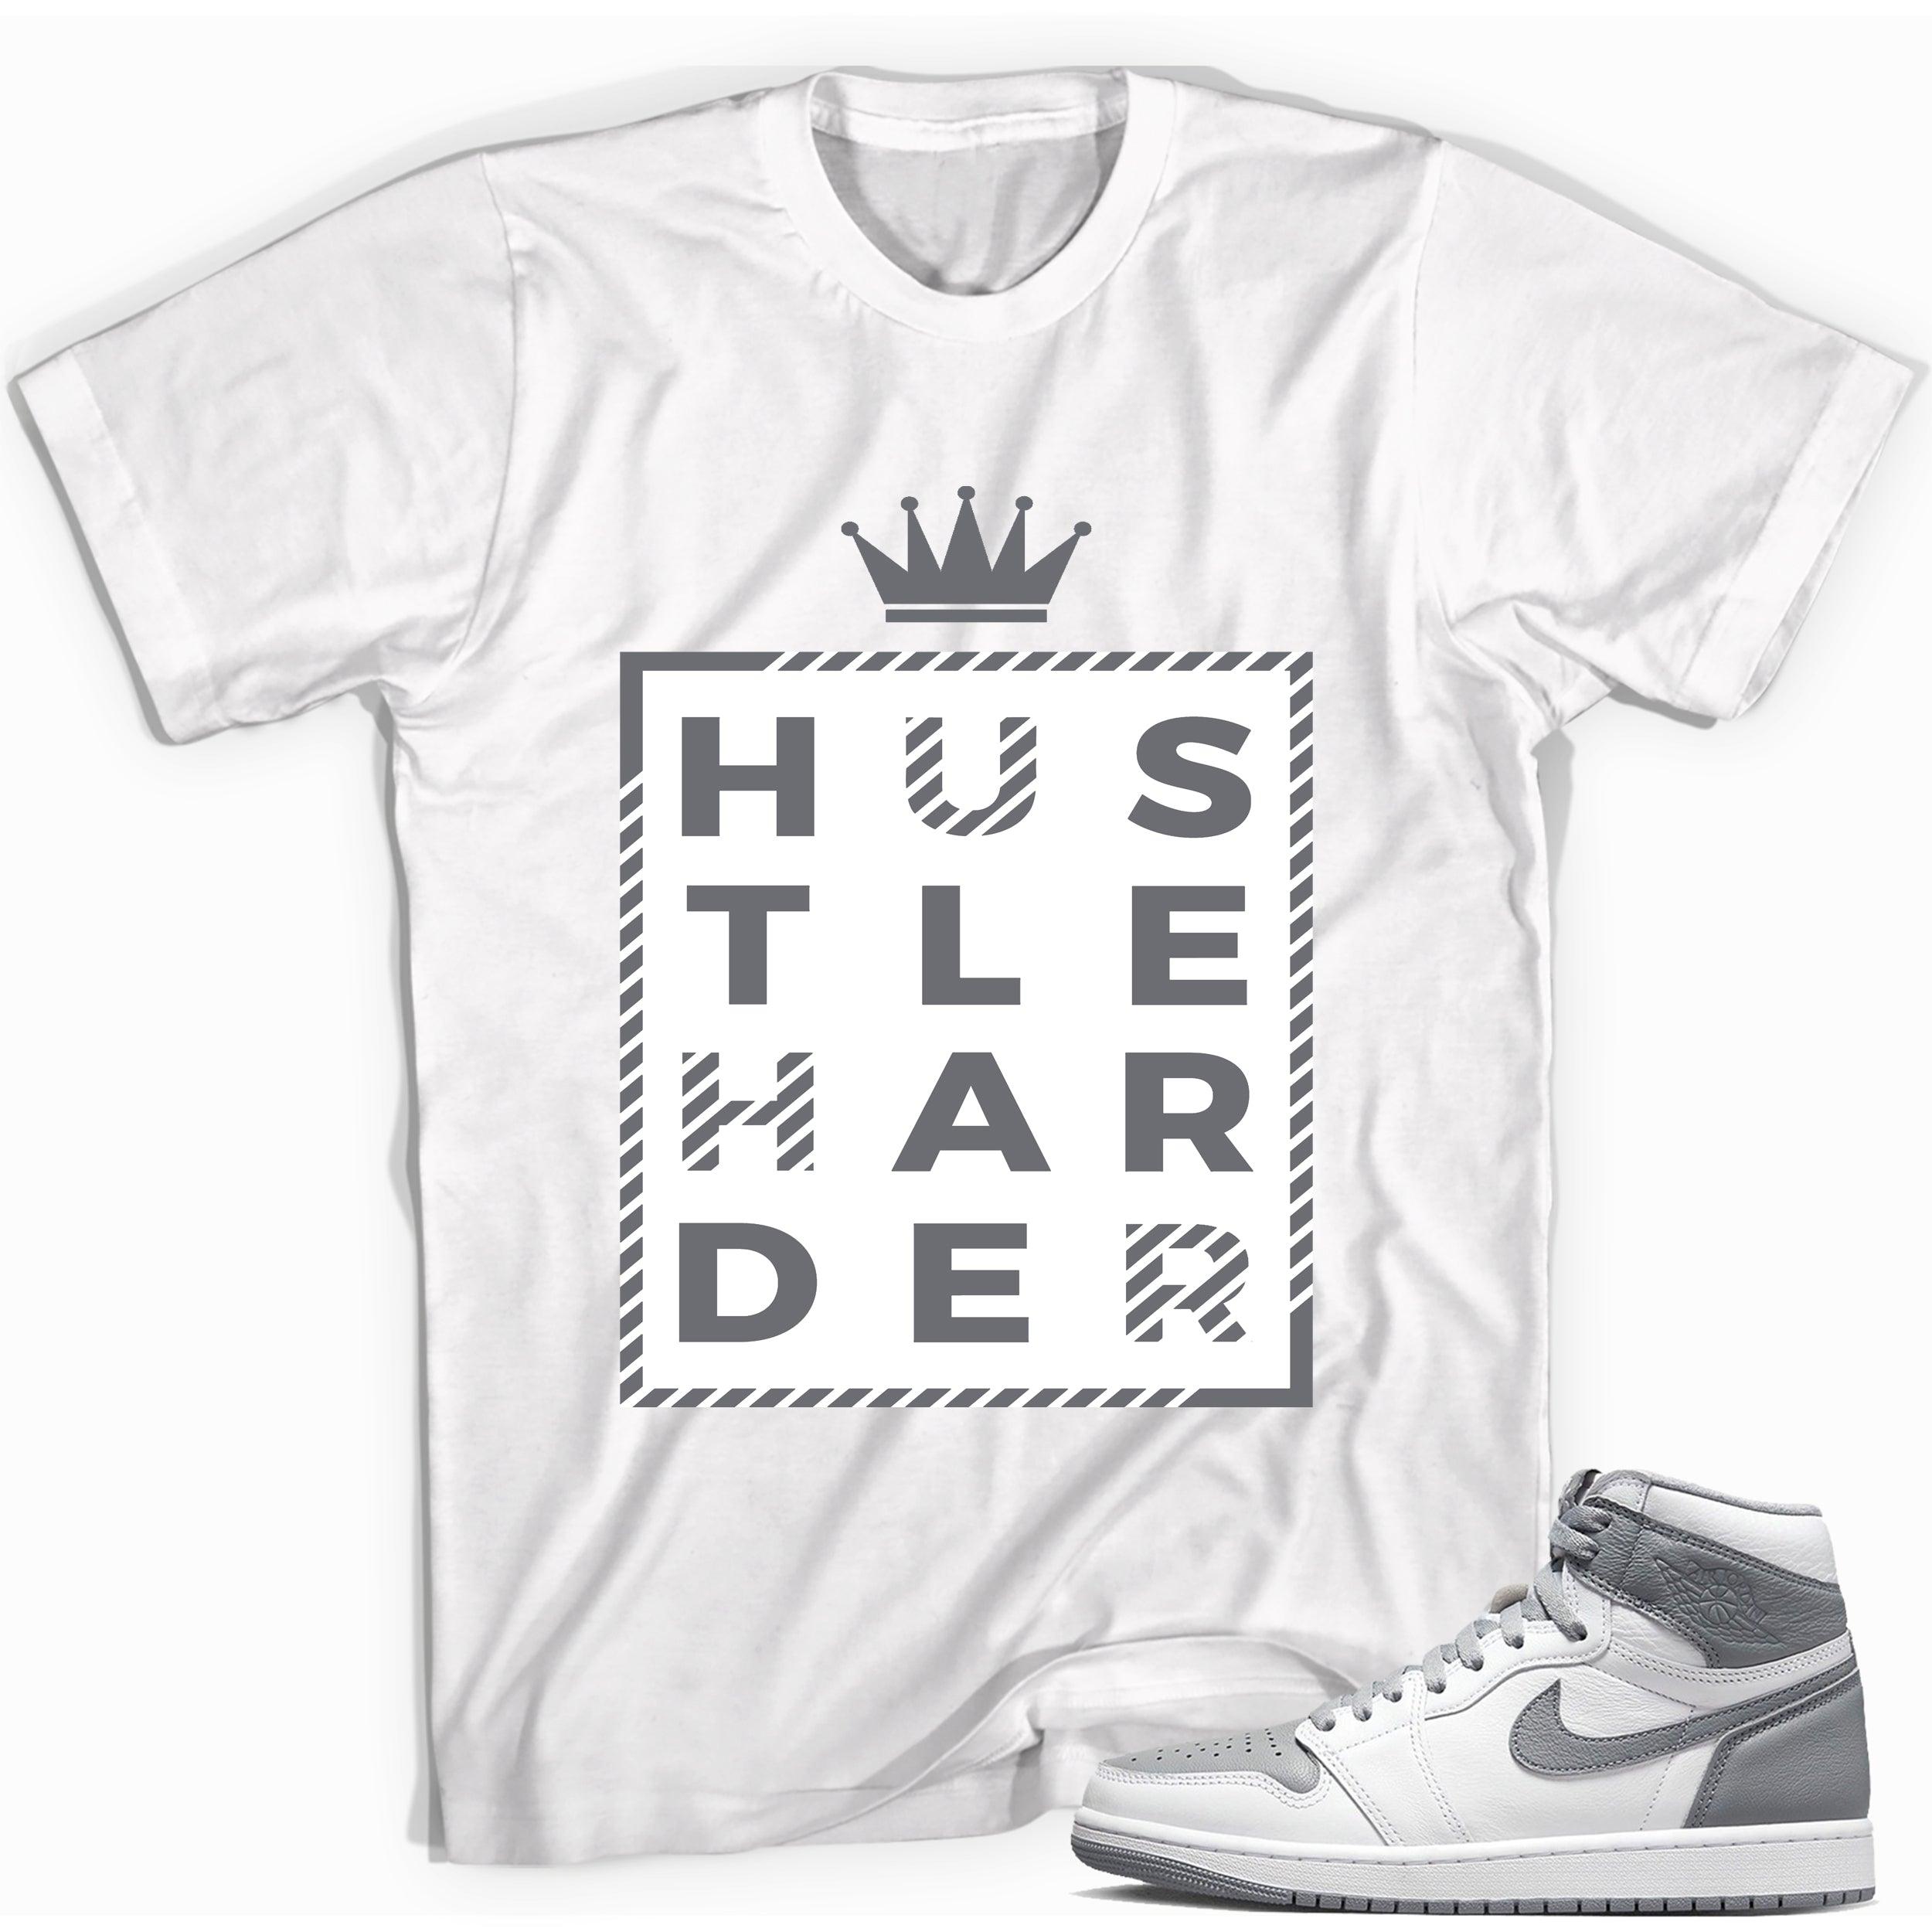 Hustle Harder Shirt for Jordan 1s photo